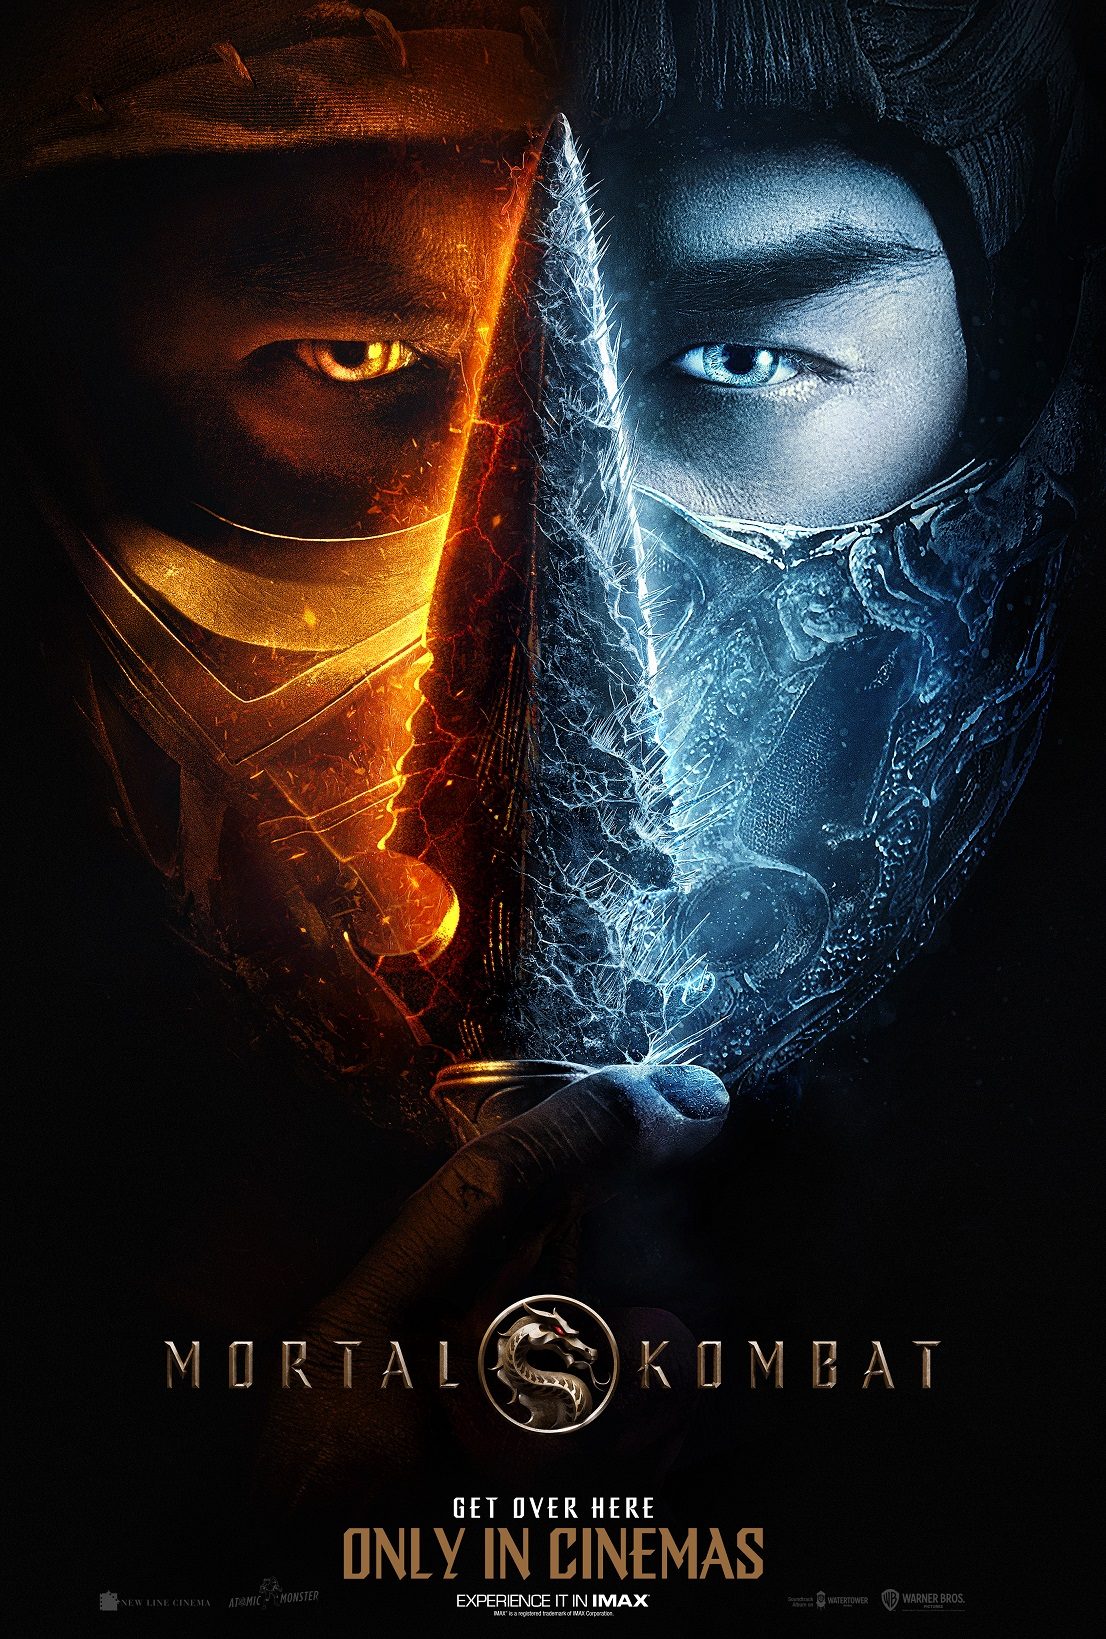 WATCH 'Mortal Kombat' drops first official trailer